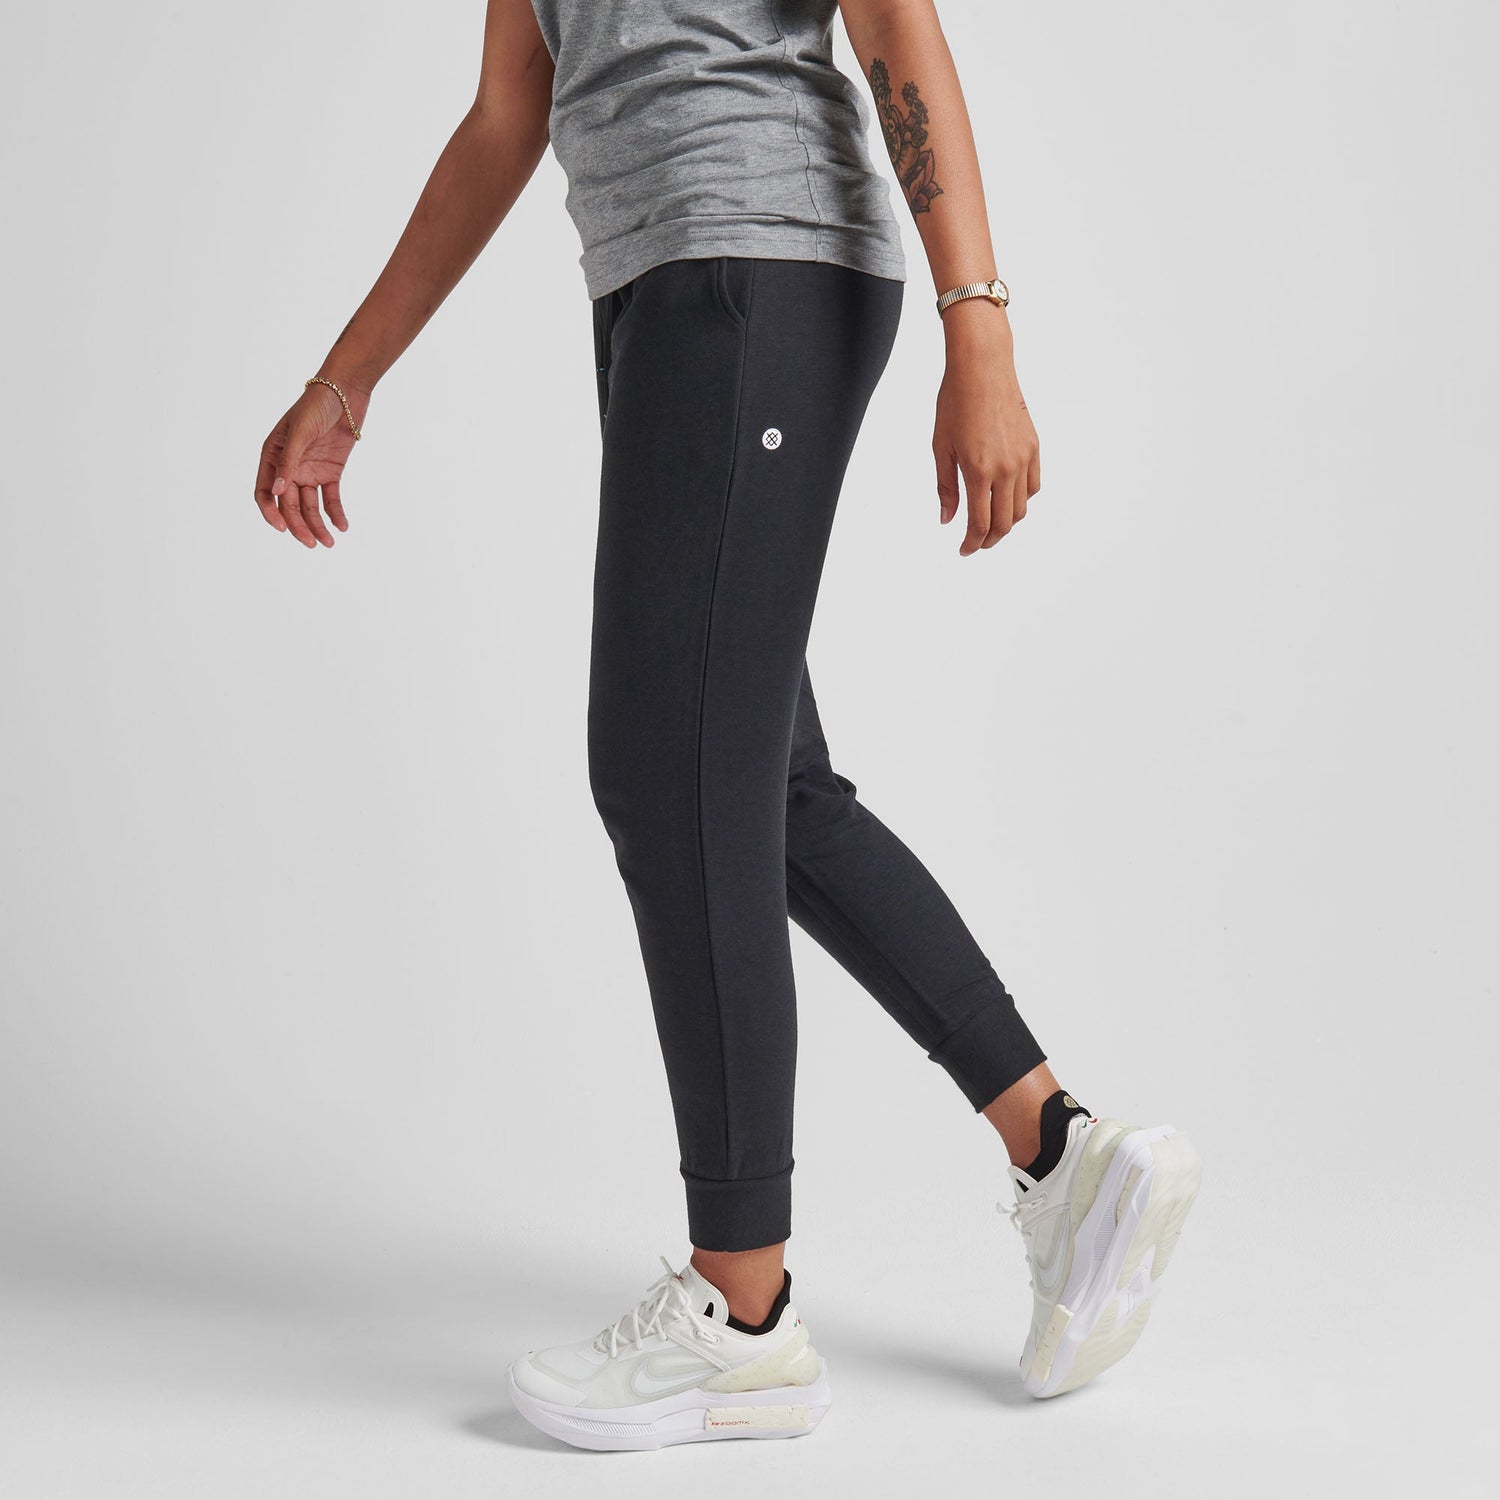 Pantalon de jogging pour femme noir Shelter de Stance